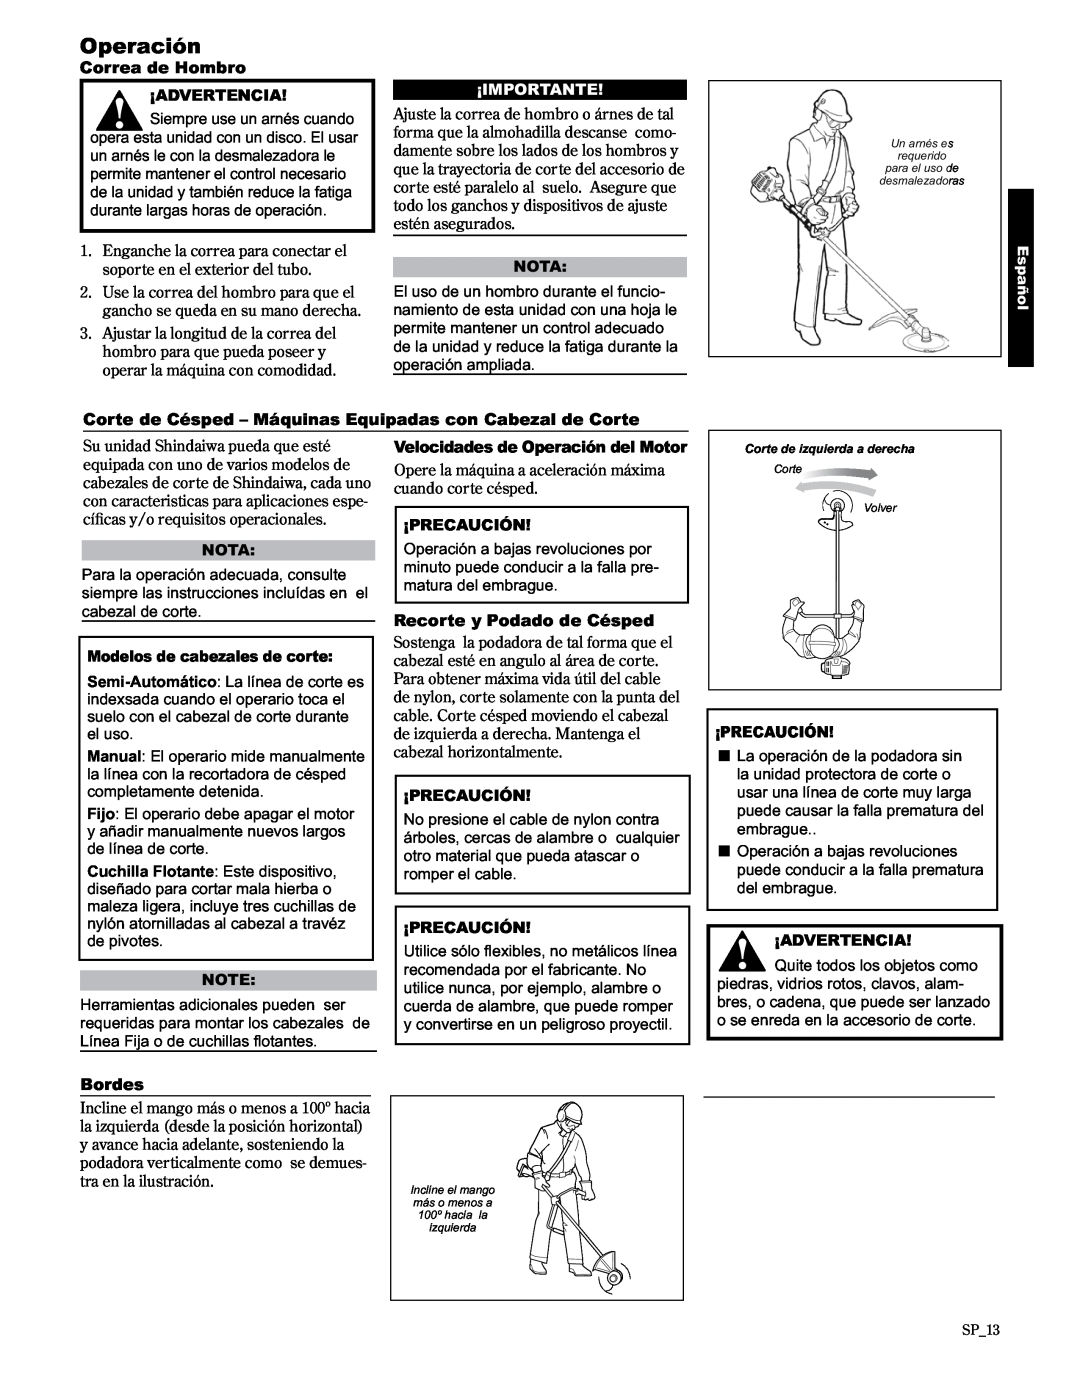 Shindaiwa C3410/EVC manual Operación, Correa de Hombro, Bordes, Recorte y Podado de Césped, ¡Advertencia, ¡Importante, Nota 